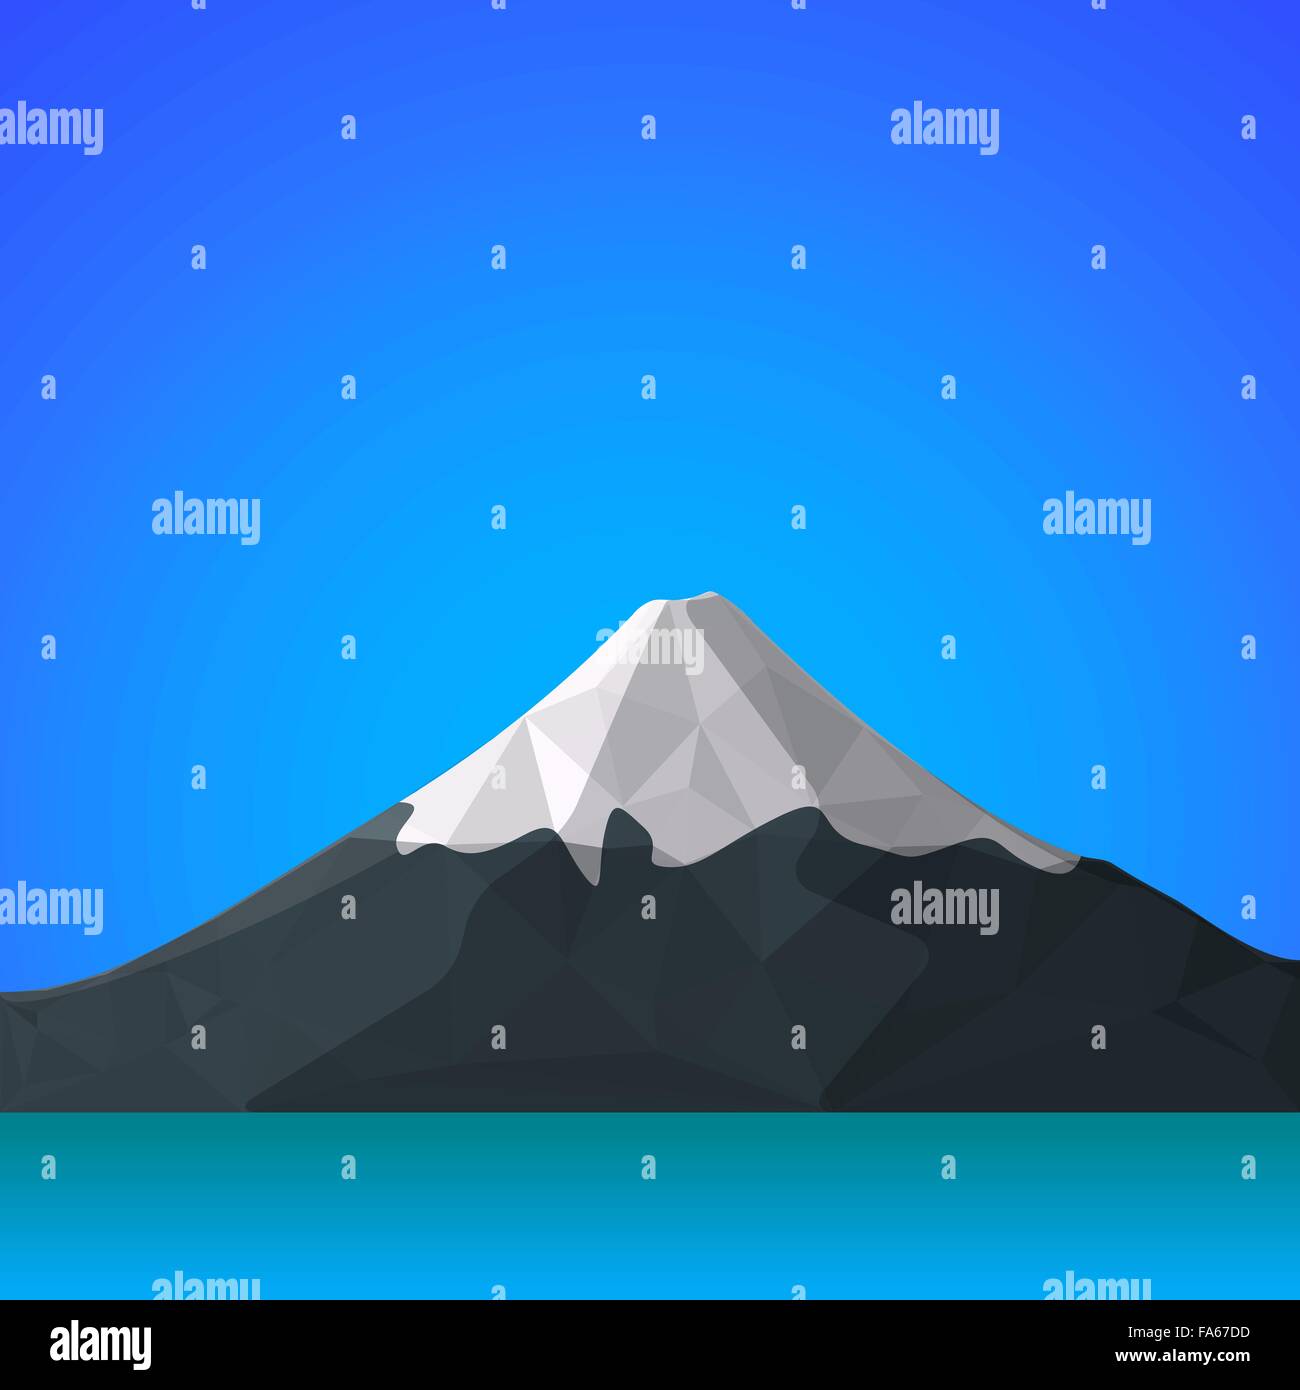 Télévision couleur vecteur polygonale design Japon Fujiyama mountain blue sky background illustration paysage eau Illustration de Vecteur